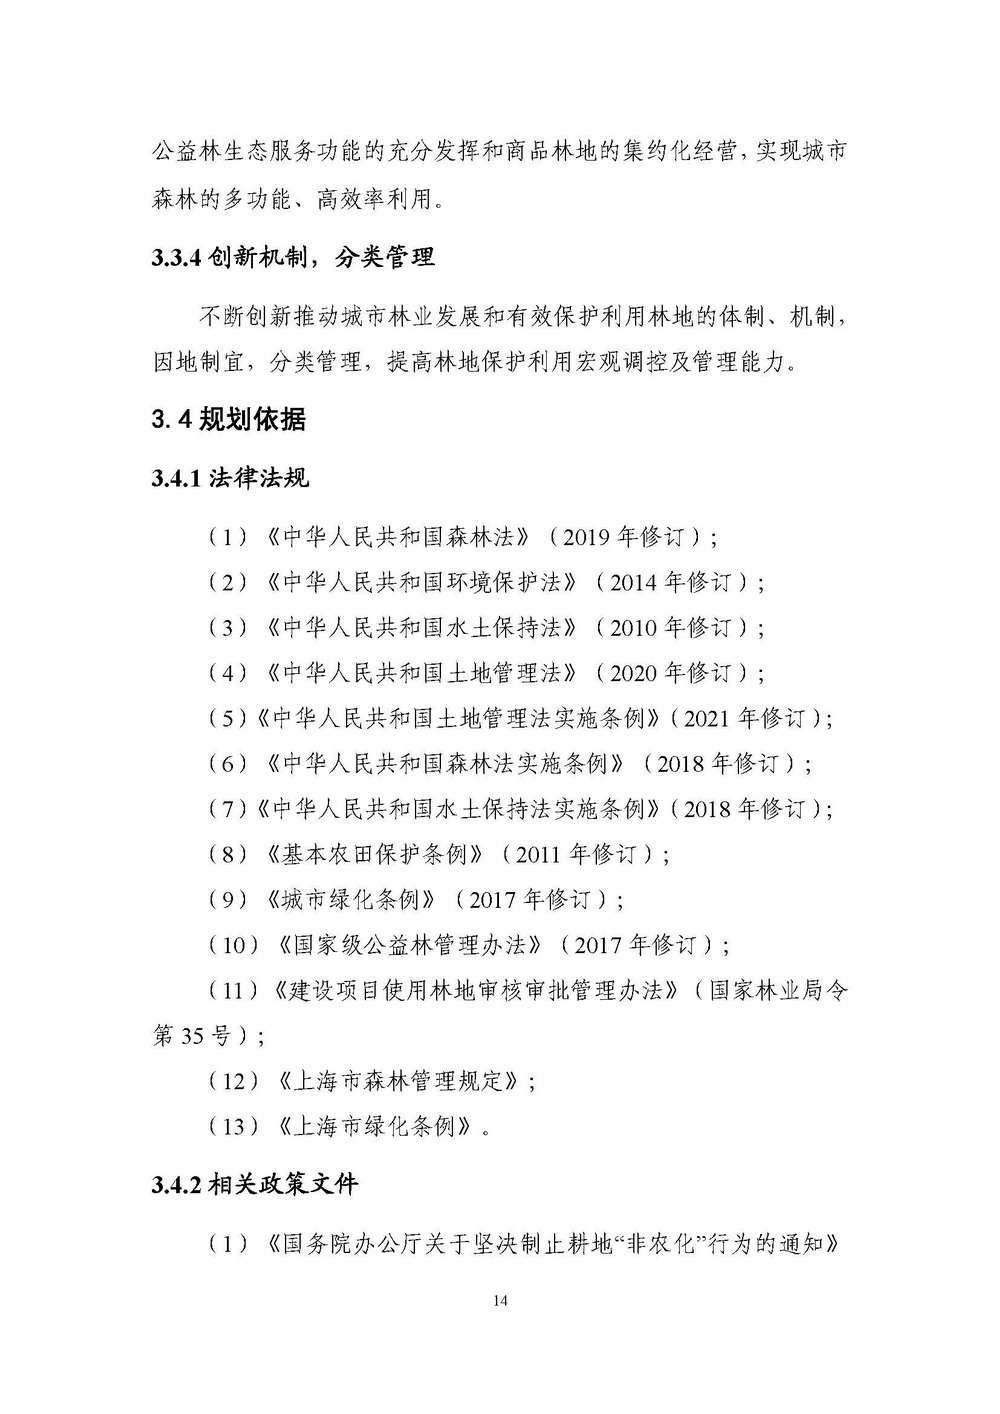 上海市森林和林地保护利用规划文本 公开稿 附图_页面_17.jpg